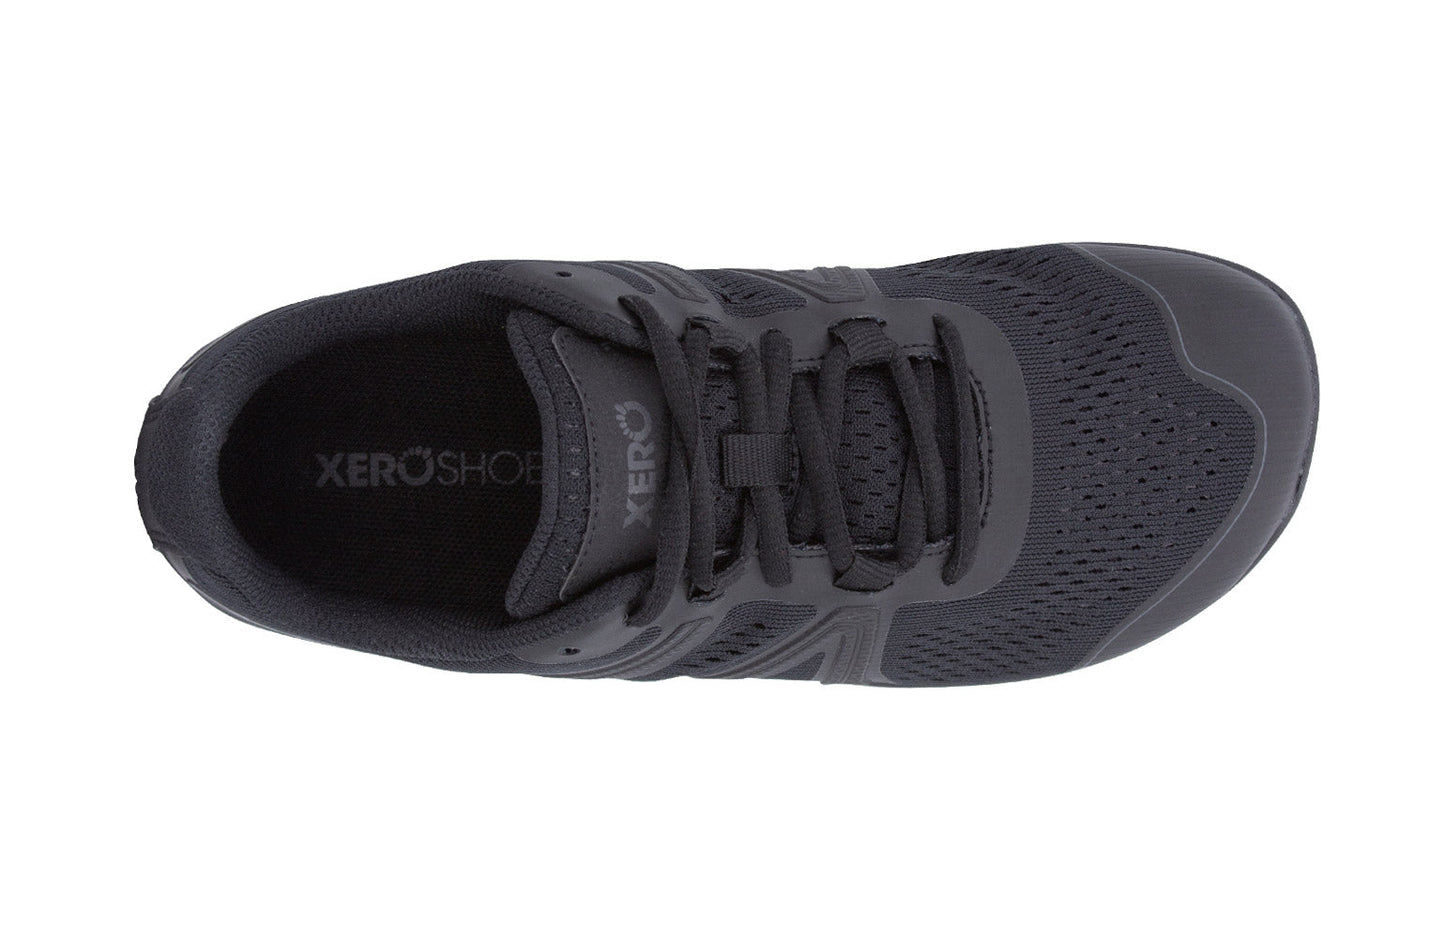 Xero Shoes HFS Womens barfods træningssko/løbesko til kvinder i farven black, top